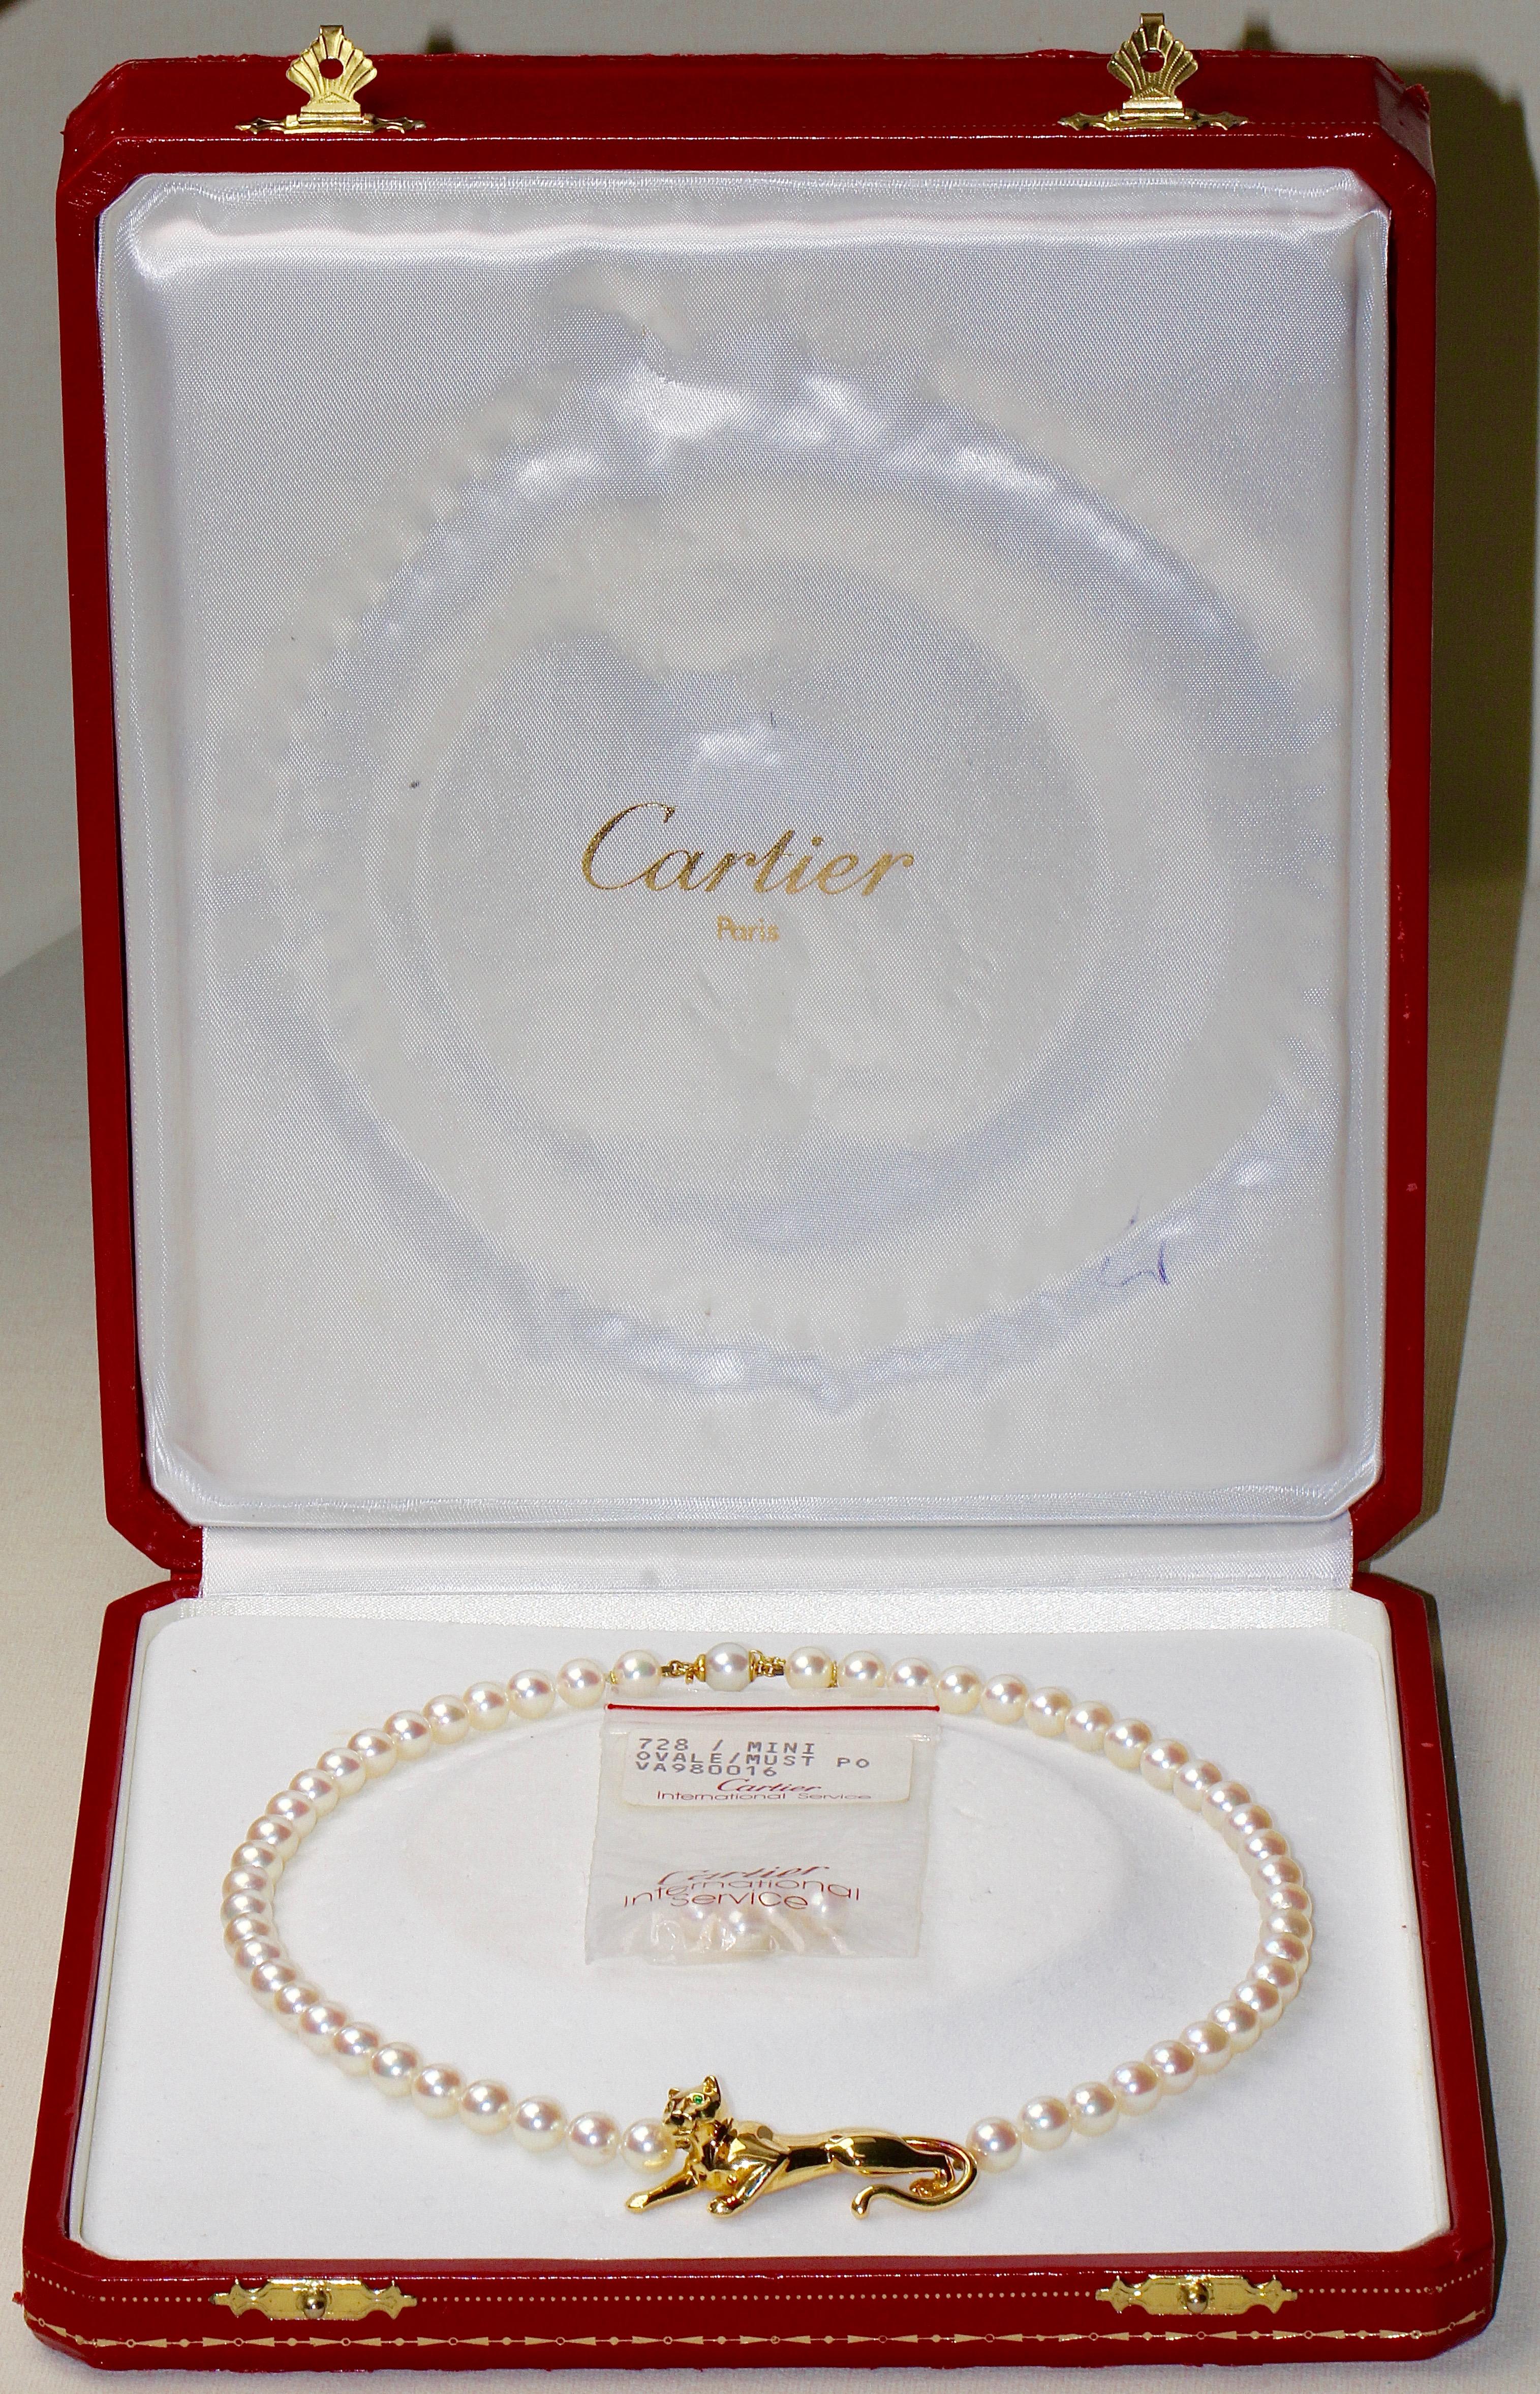 Original 18 Karat Gold Cartier Panthere Beaded Pearl Necklace 7